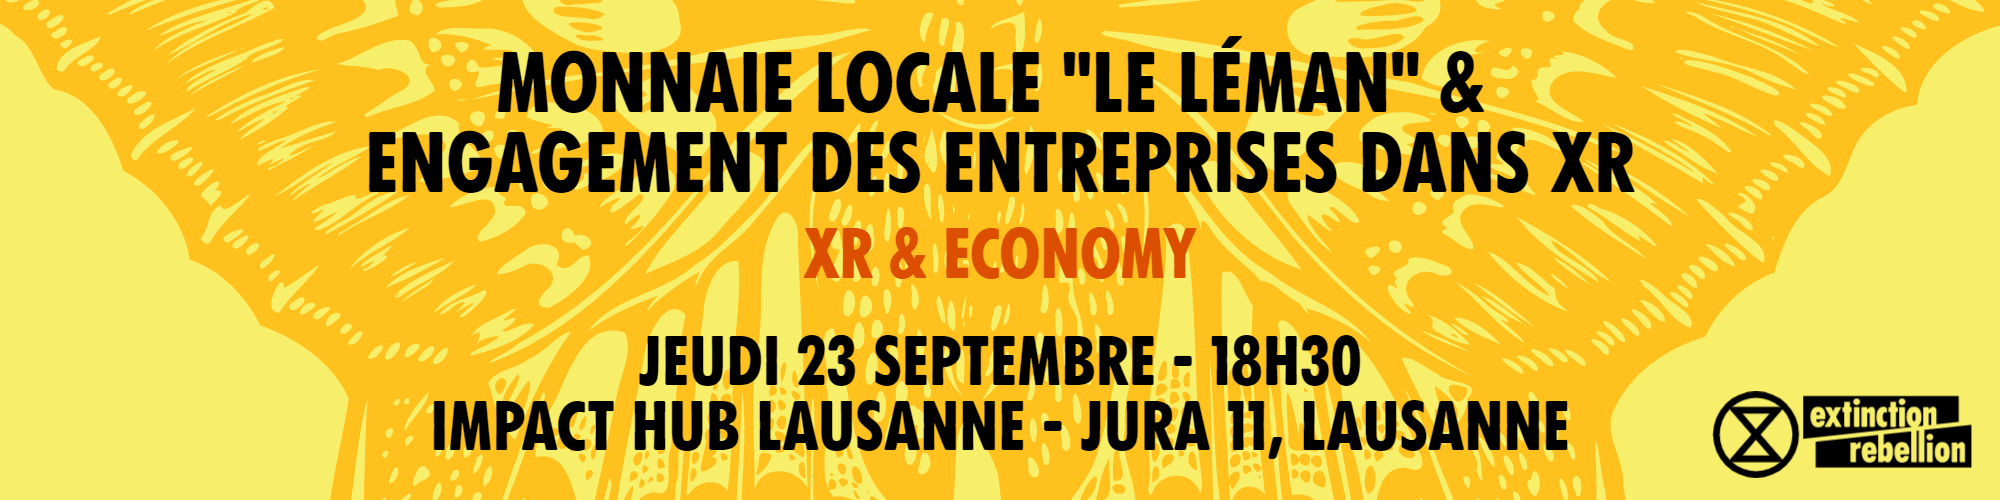 Monnaie locale  »Le Léman » & engagement des entreprises dans XR